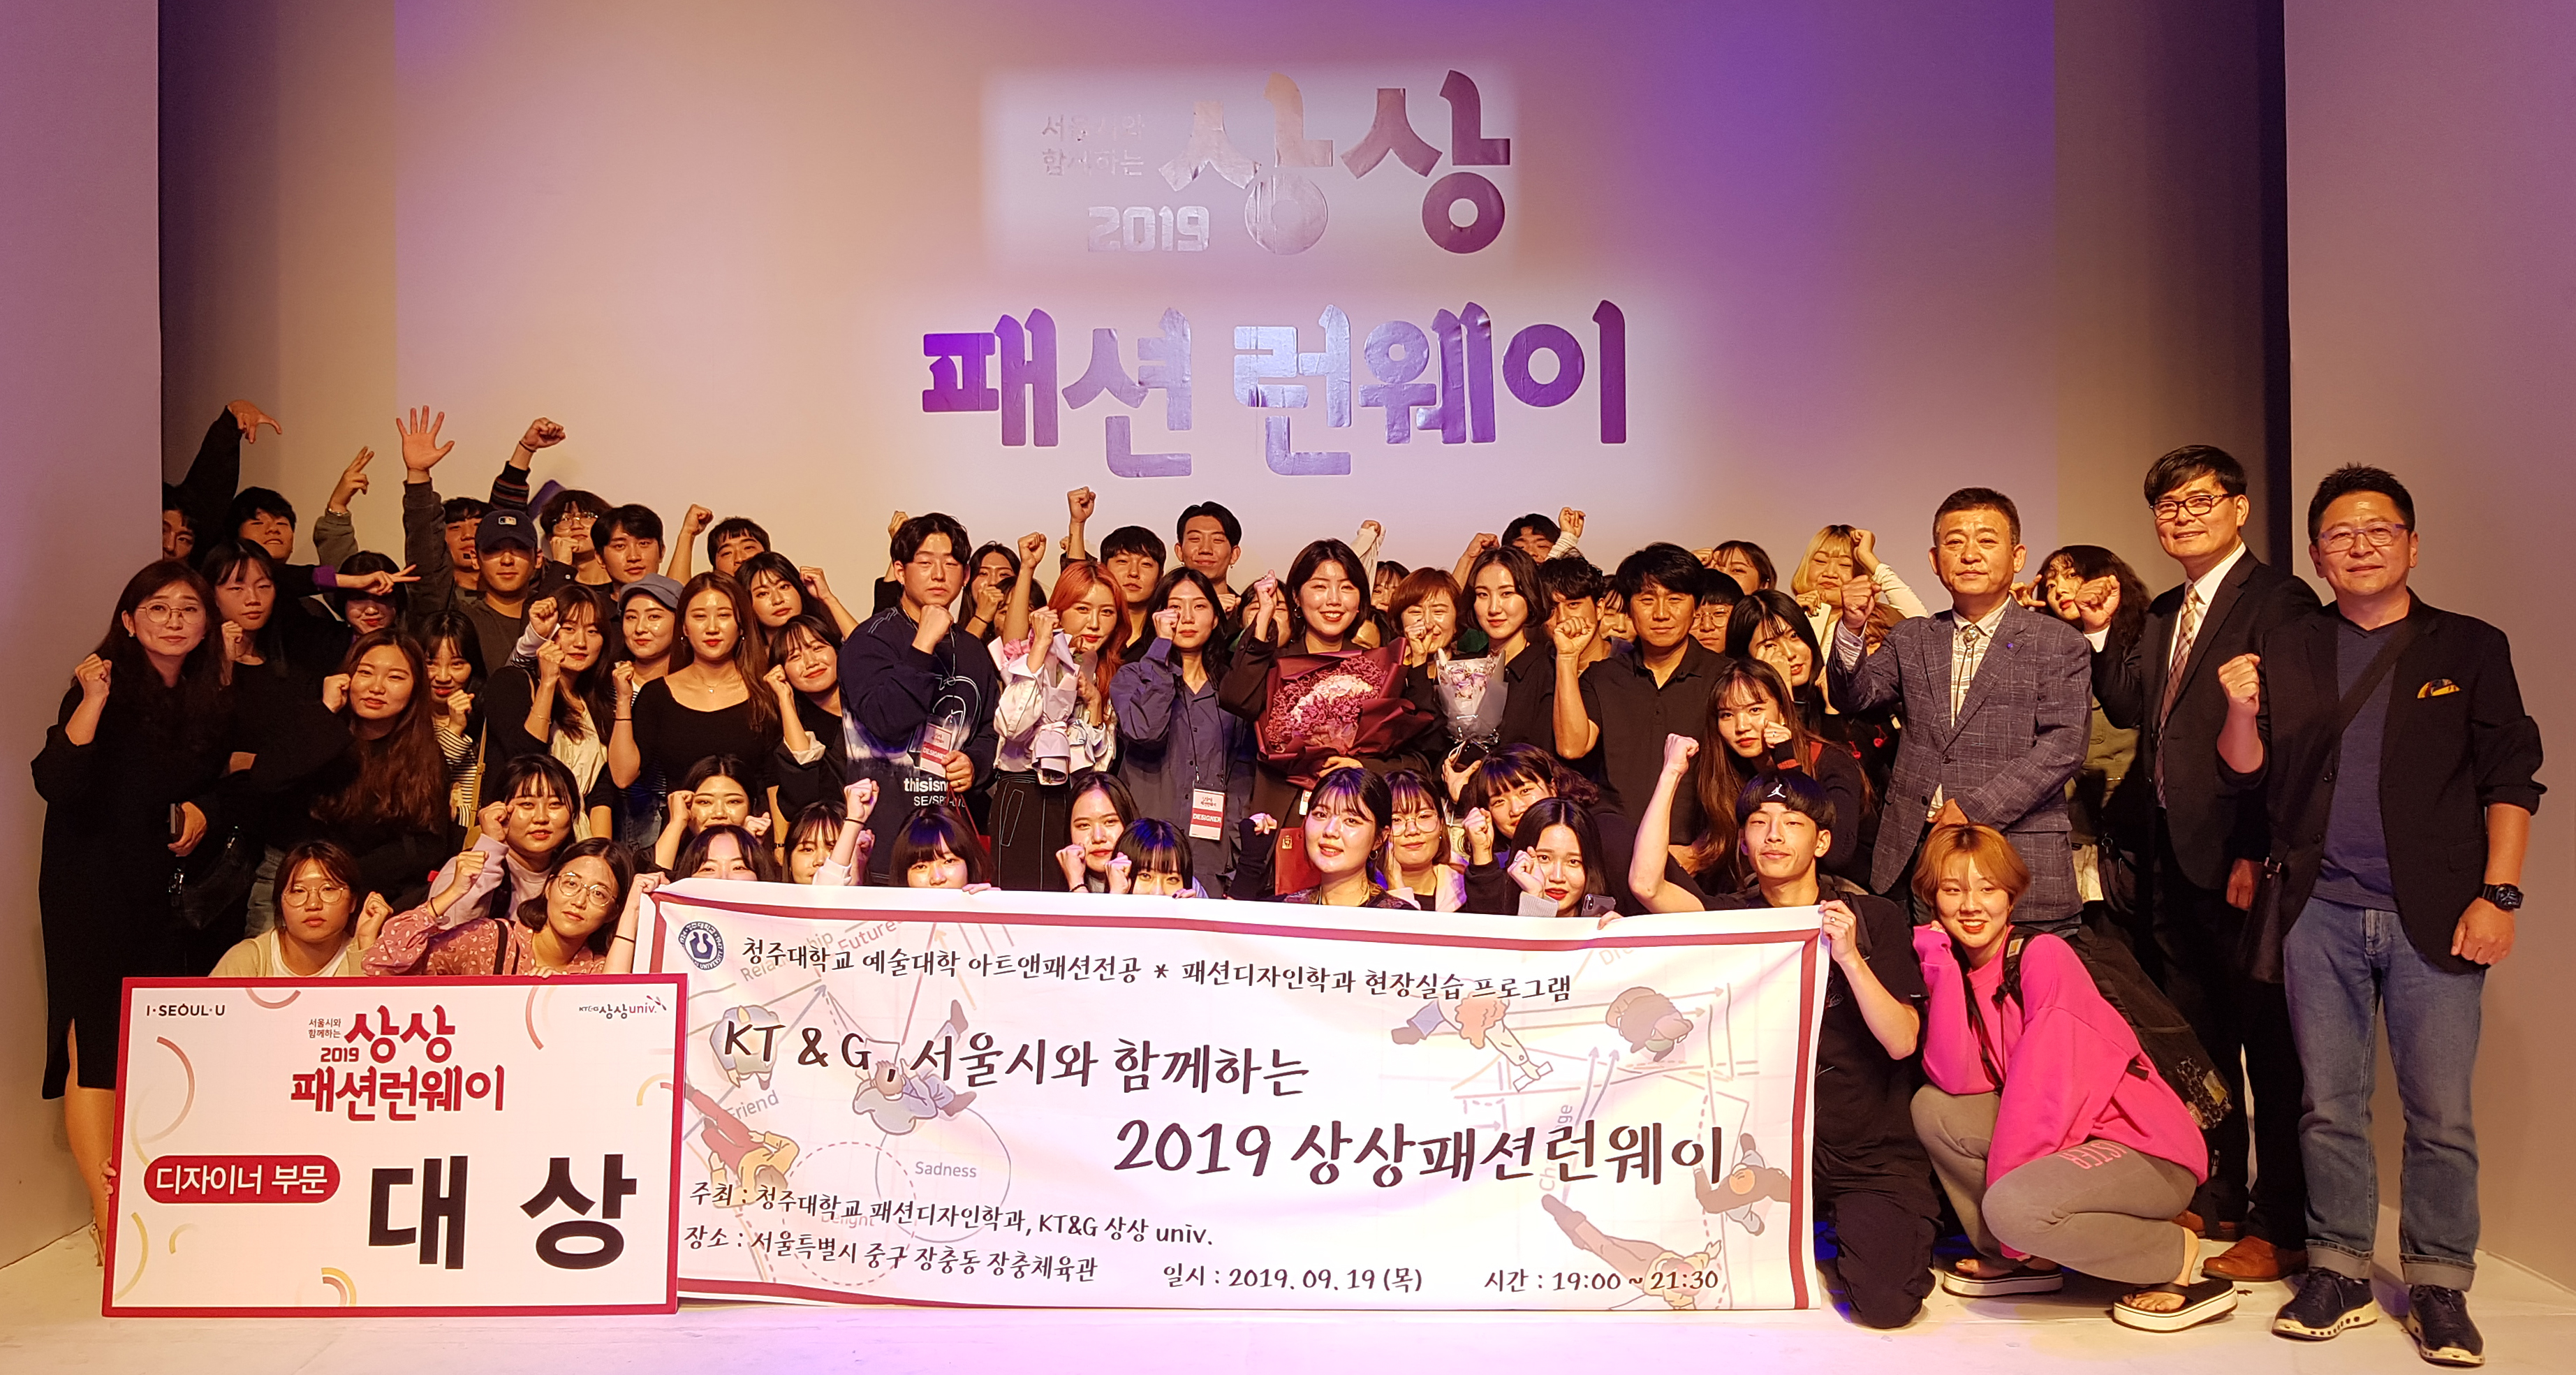 청주대학교 아트앤패션전공이 ‘2019 상상패션 런웨이’ 의상디자인 공모전에서 대상을 수상한 후, 런웨이가 진행된 서울 장충체육관에서 단체사진을 촬영하고 있다.